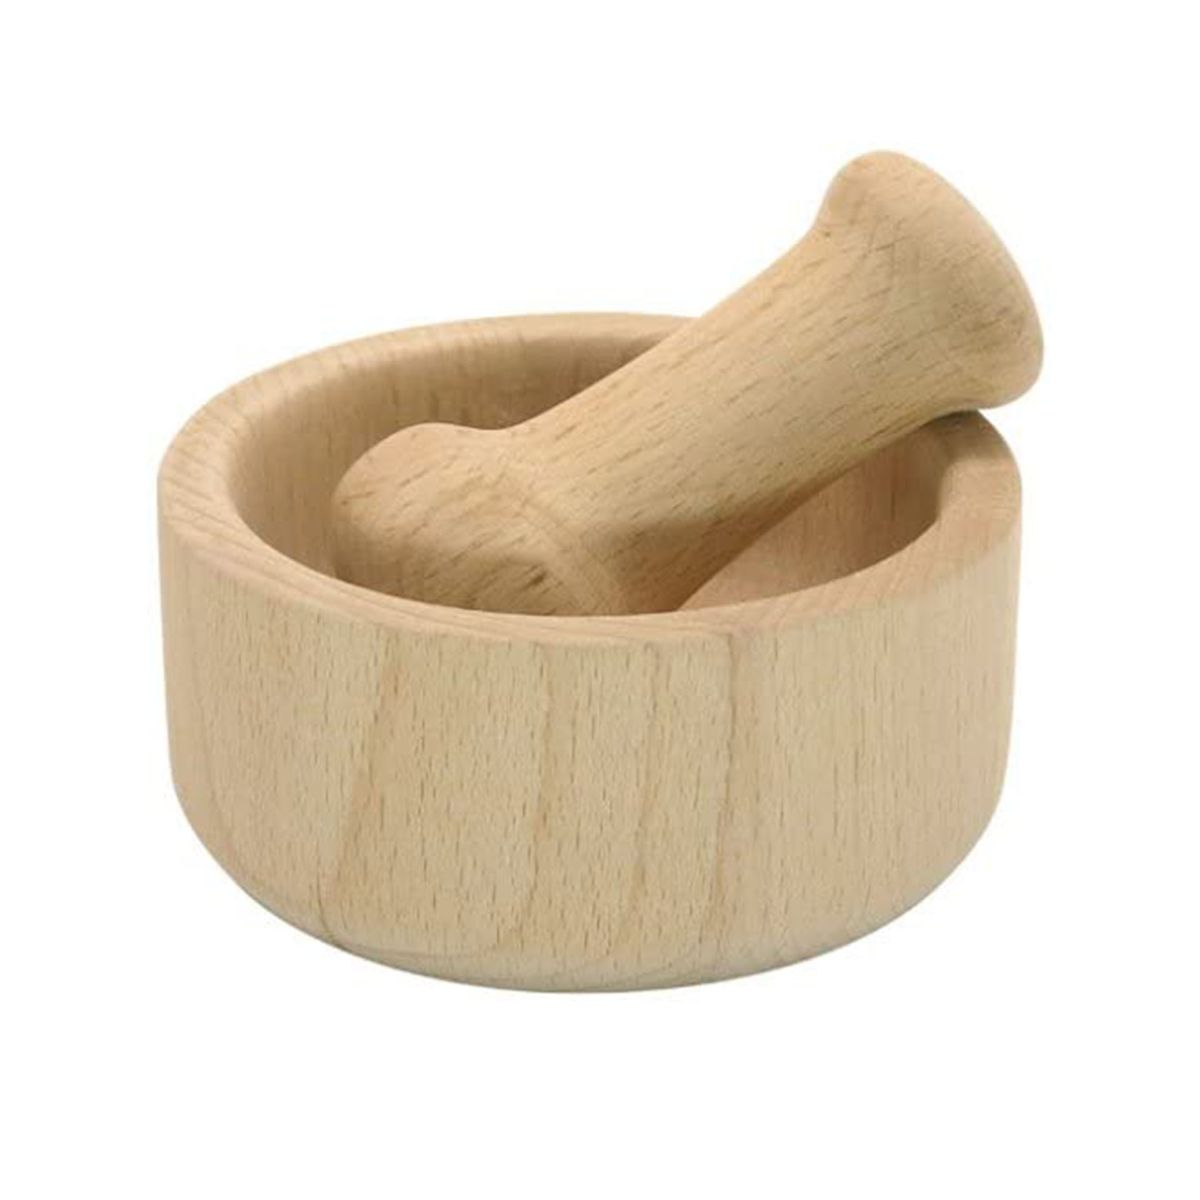 Mortier et pilon bambou - Cook Concept - MaSpatule